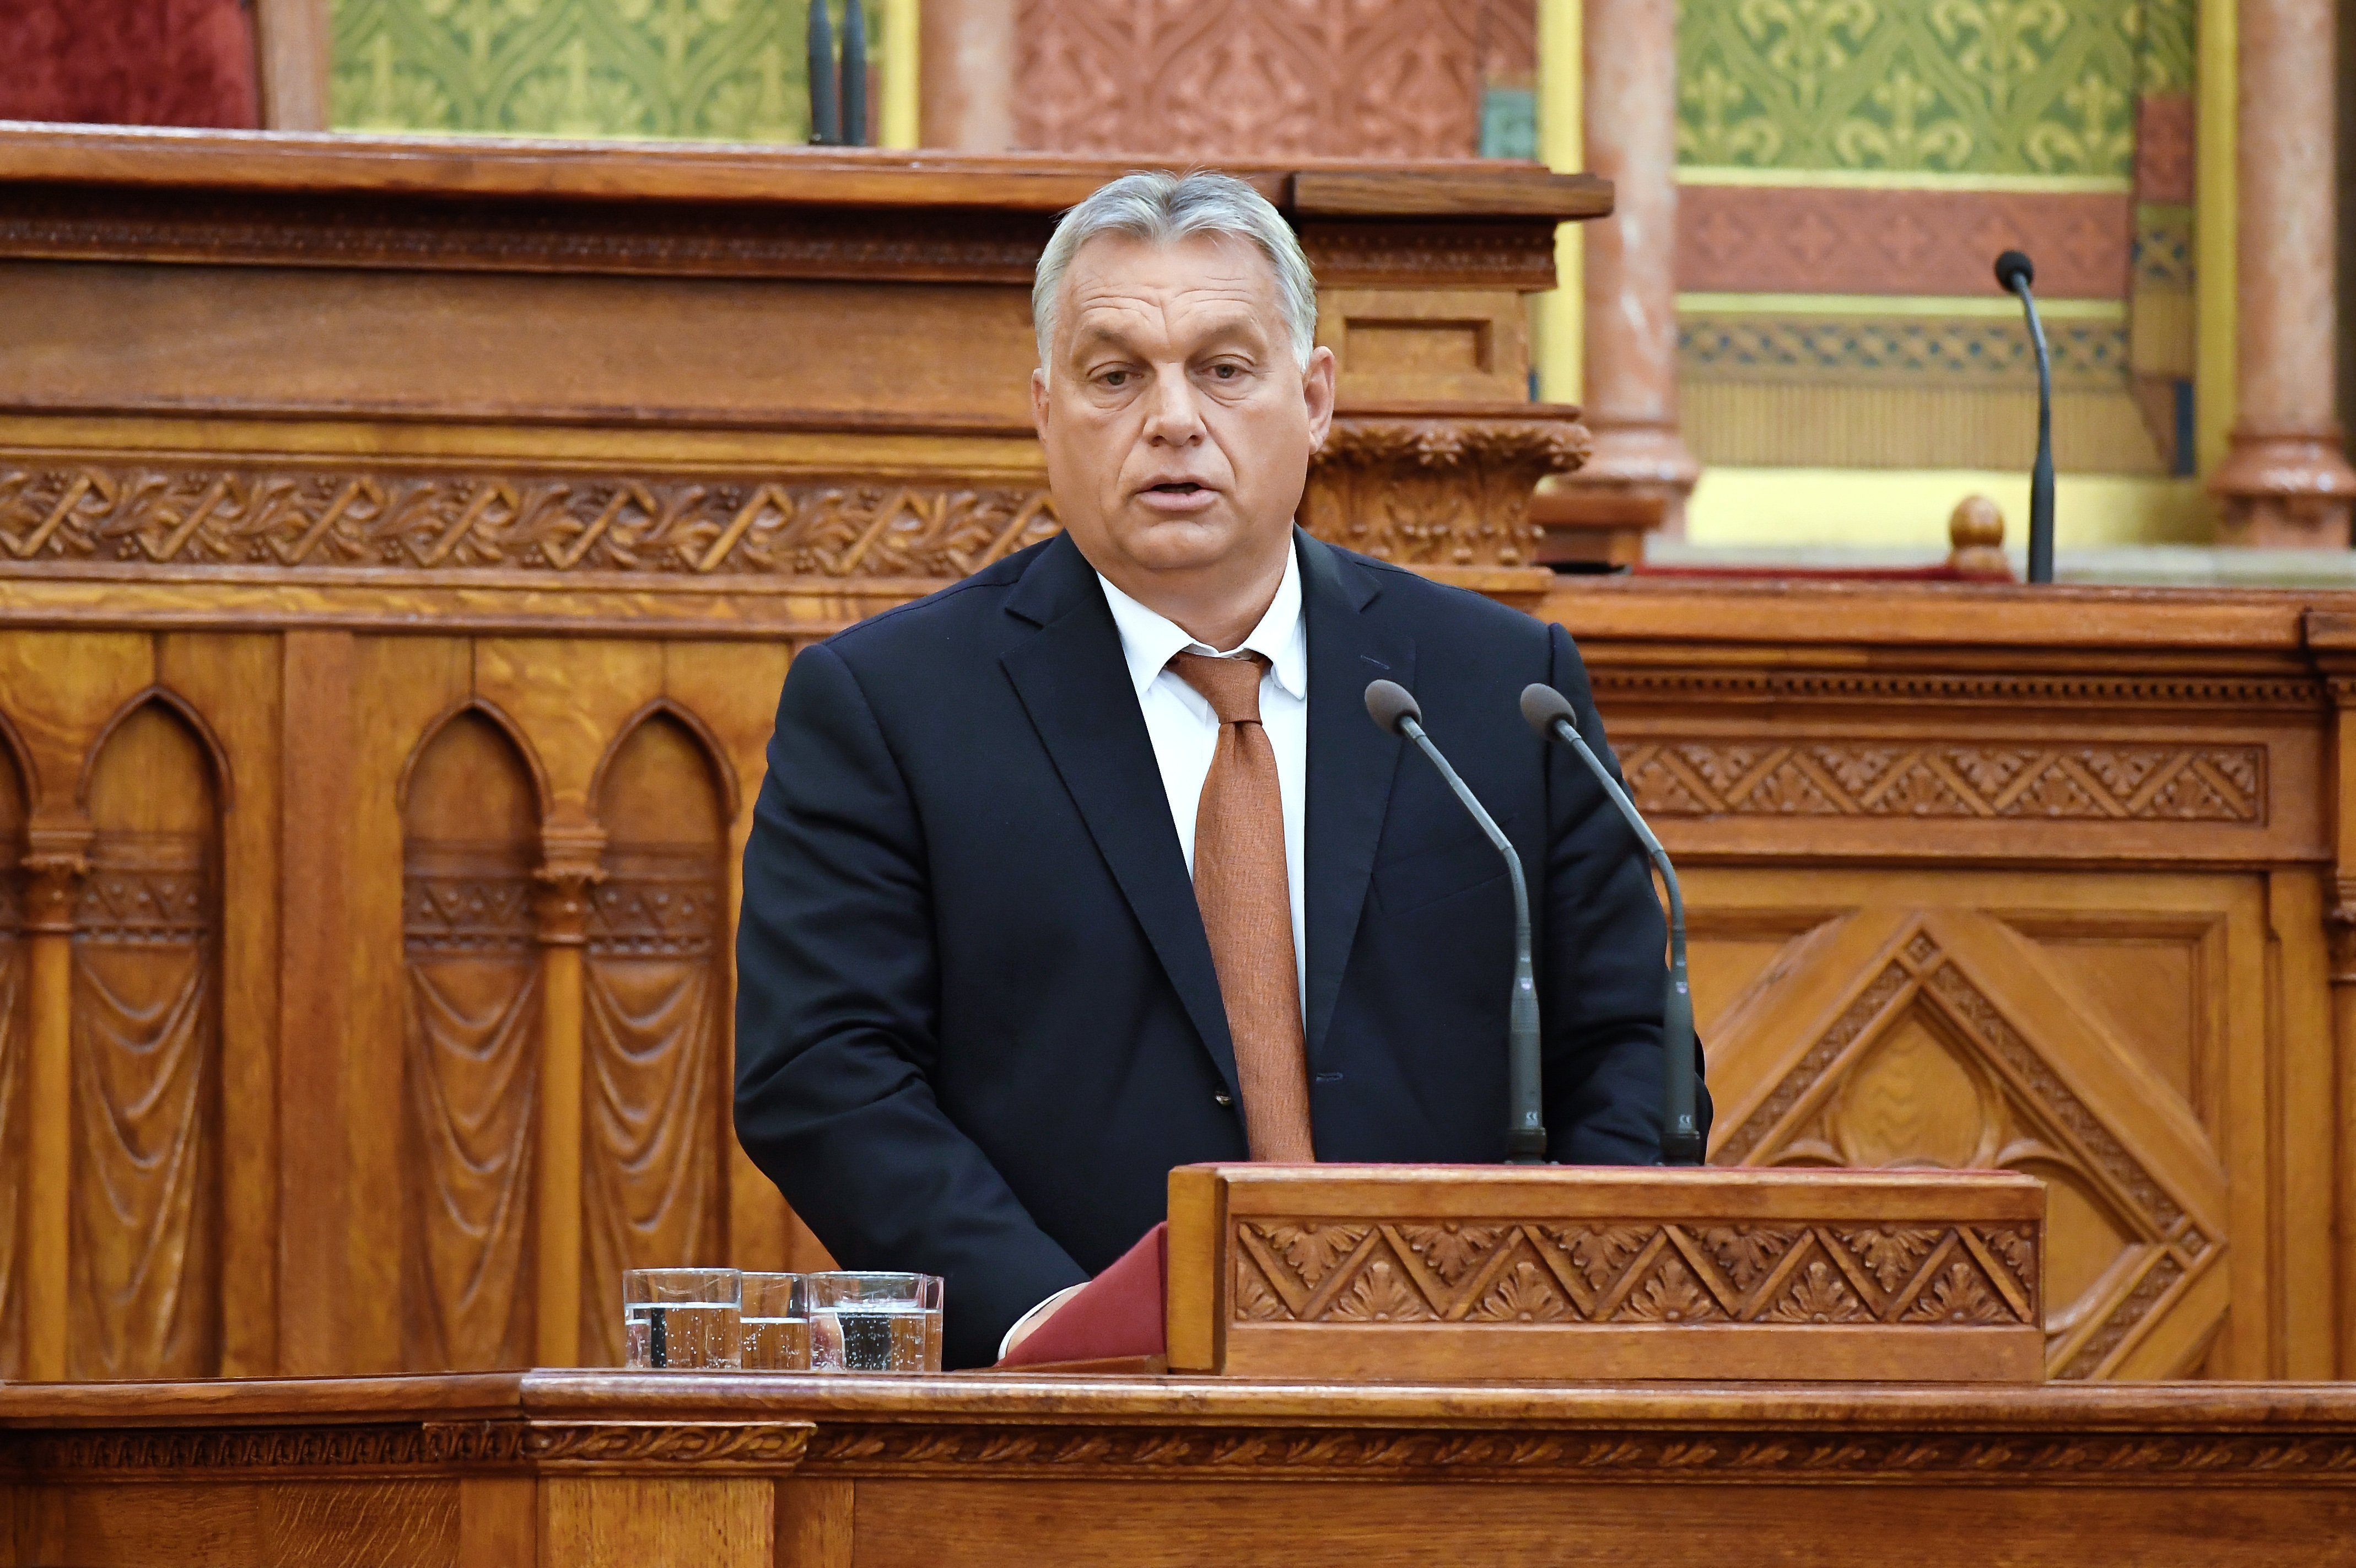 Budapost: Opposition setzt auf rasche Verfassungsreform